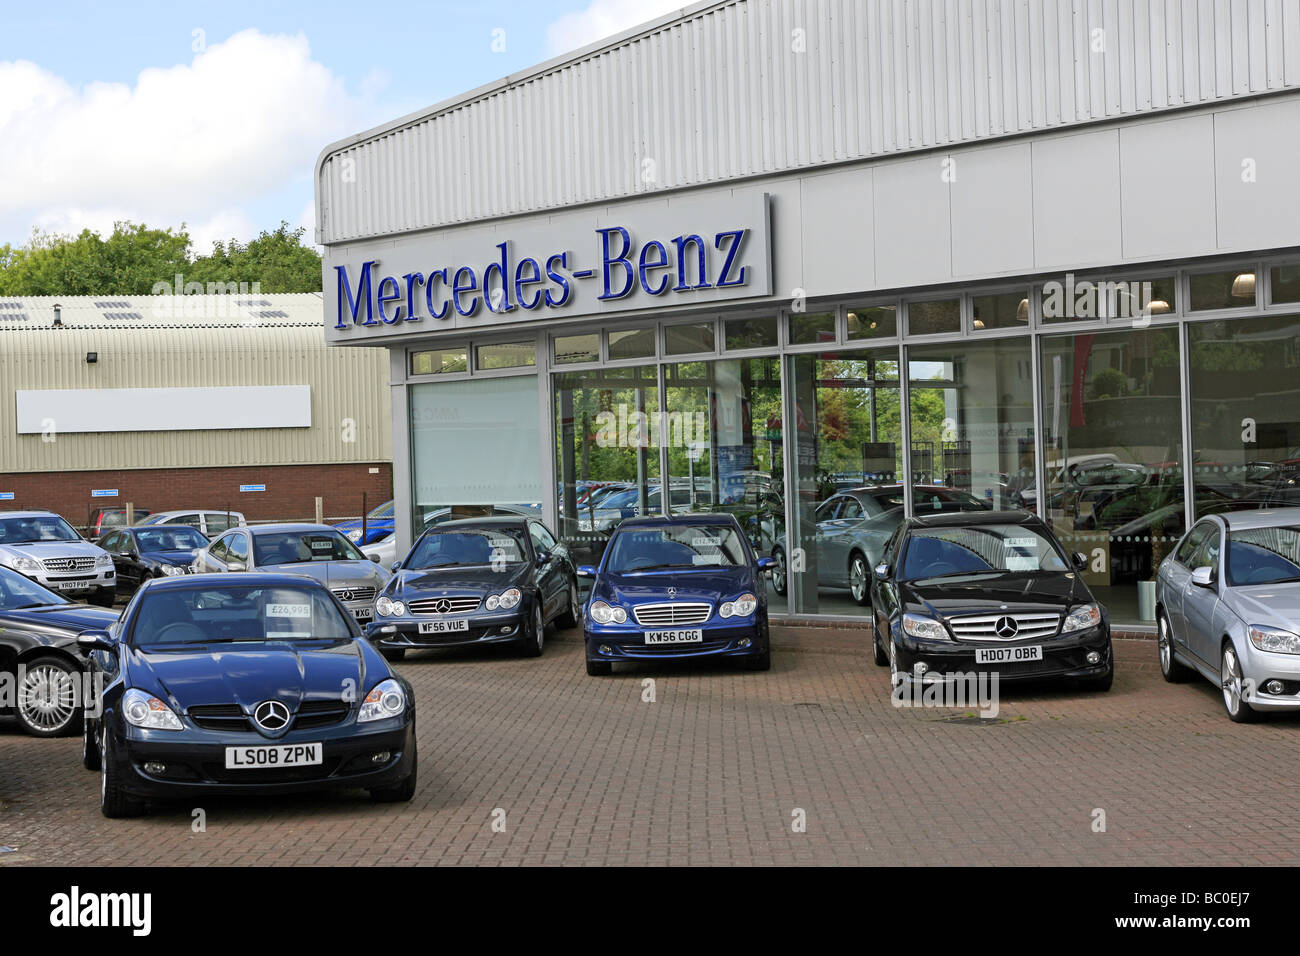 Mercedes Benz concessionnaire automobile allemand de luxe avant-cour Banque D'Images